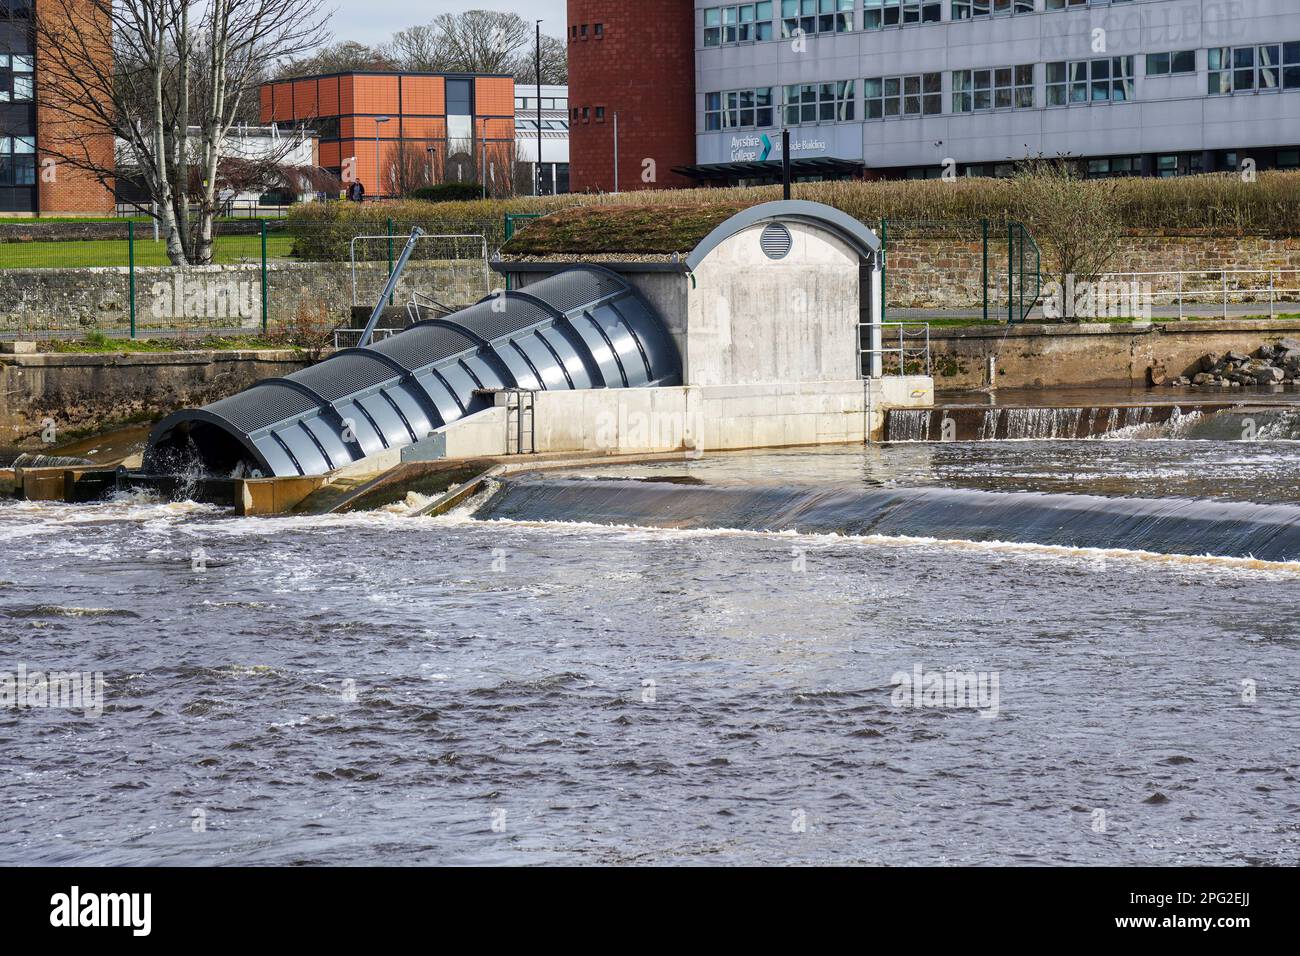 Projet hydroélectrique utilisant l'énergie hydraulique d'un barrage d'eau existant pour produire de l'électricité dans le réseau national,. Construit sur la rivière Ayr, Ayrshire, Banque D'Images